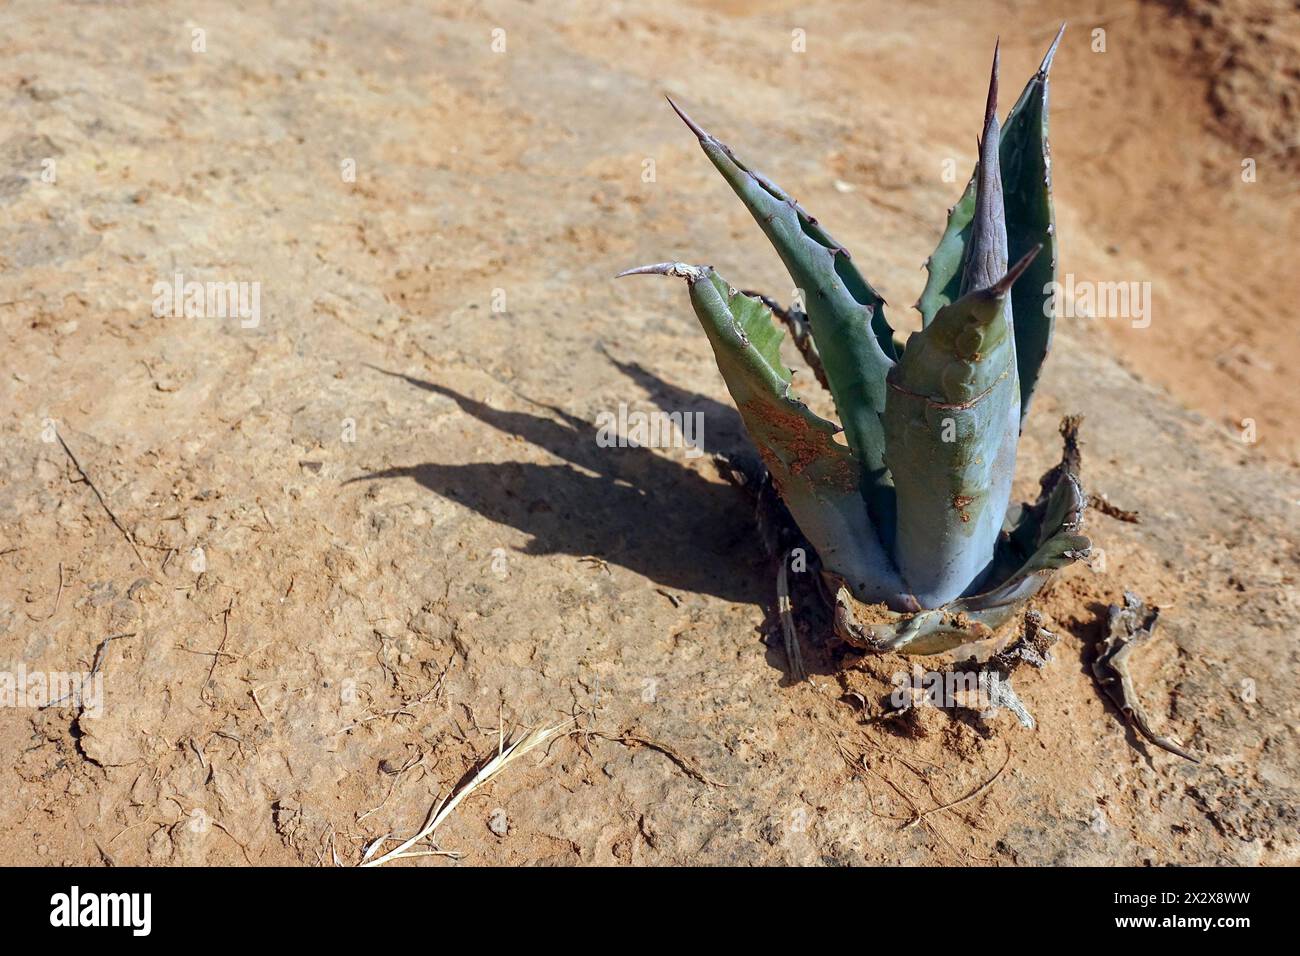 22.07.2019, Burgau, Algarve, Portugal - echte Aloe wächst auf trockenem Sandboden. 00S190722D012CAROEX.JPG [MODELLVERSION: NICHT ZUTREFFEND, EIGENSCHAFTSFREIGABEN Stockfoto